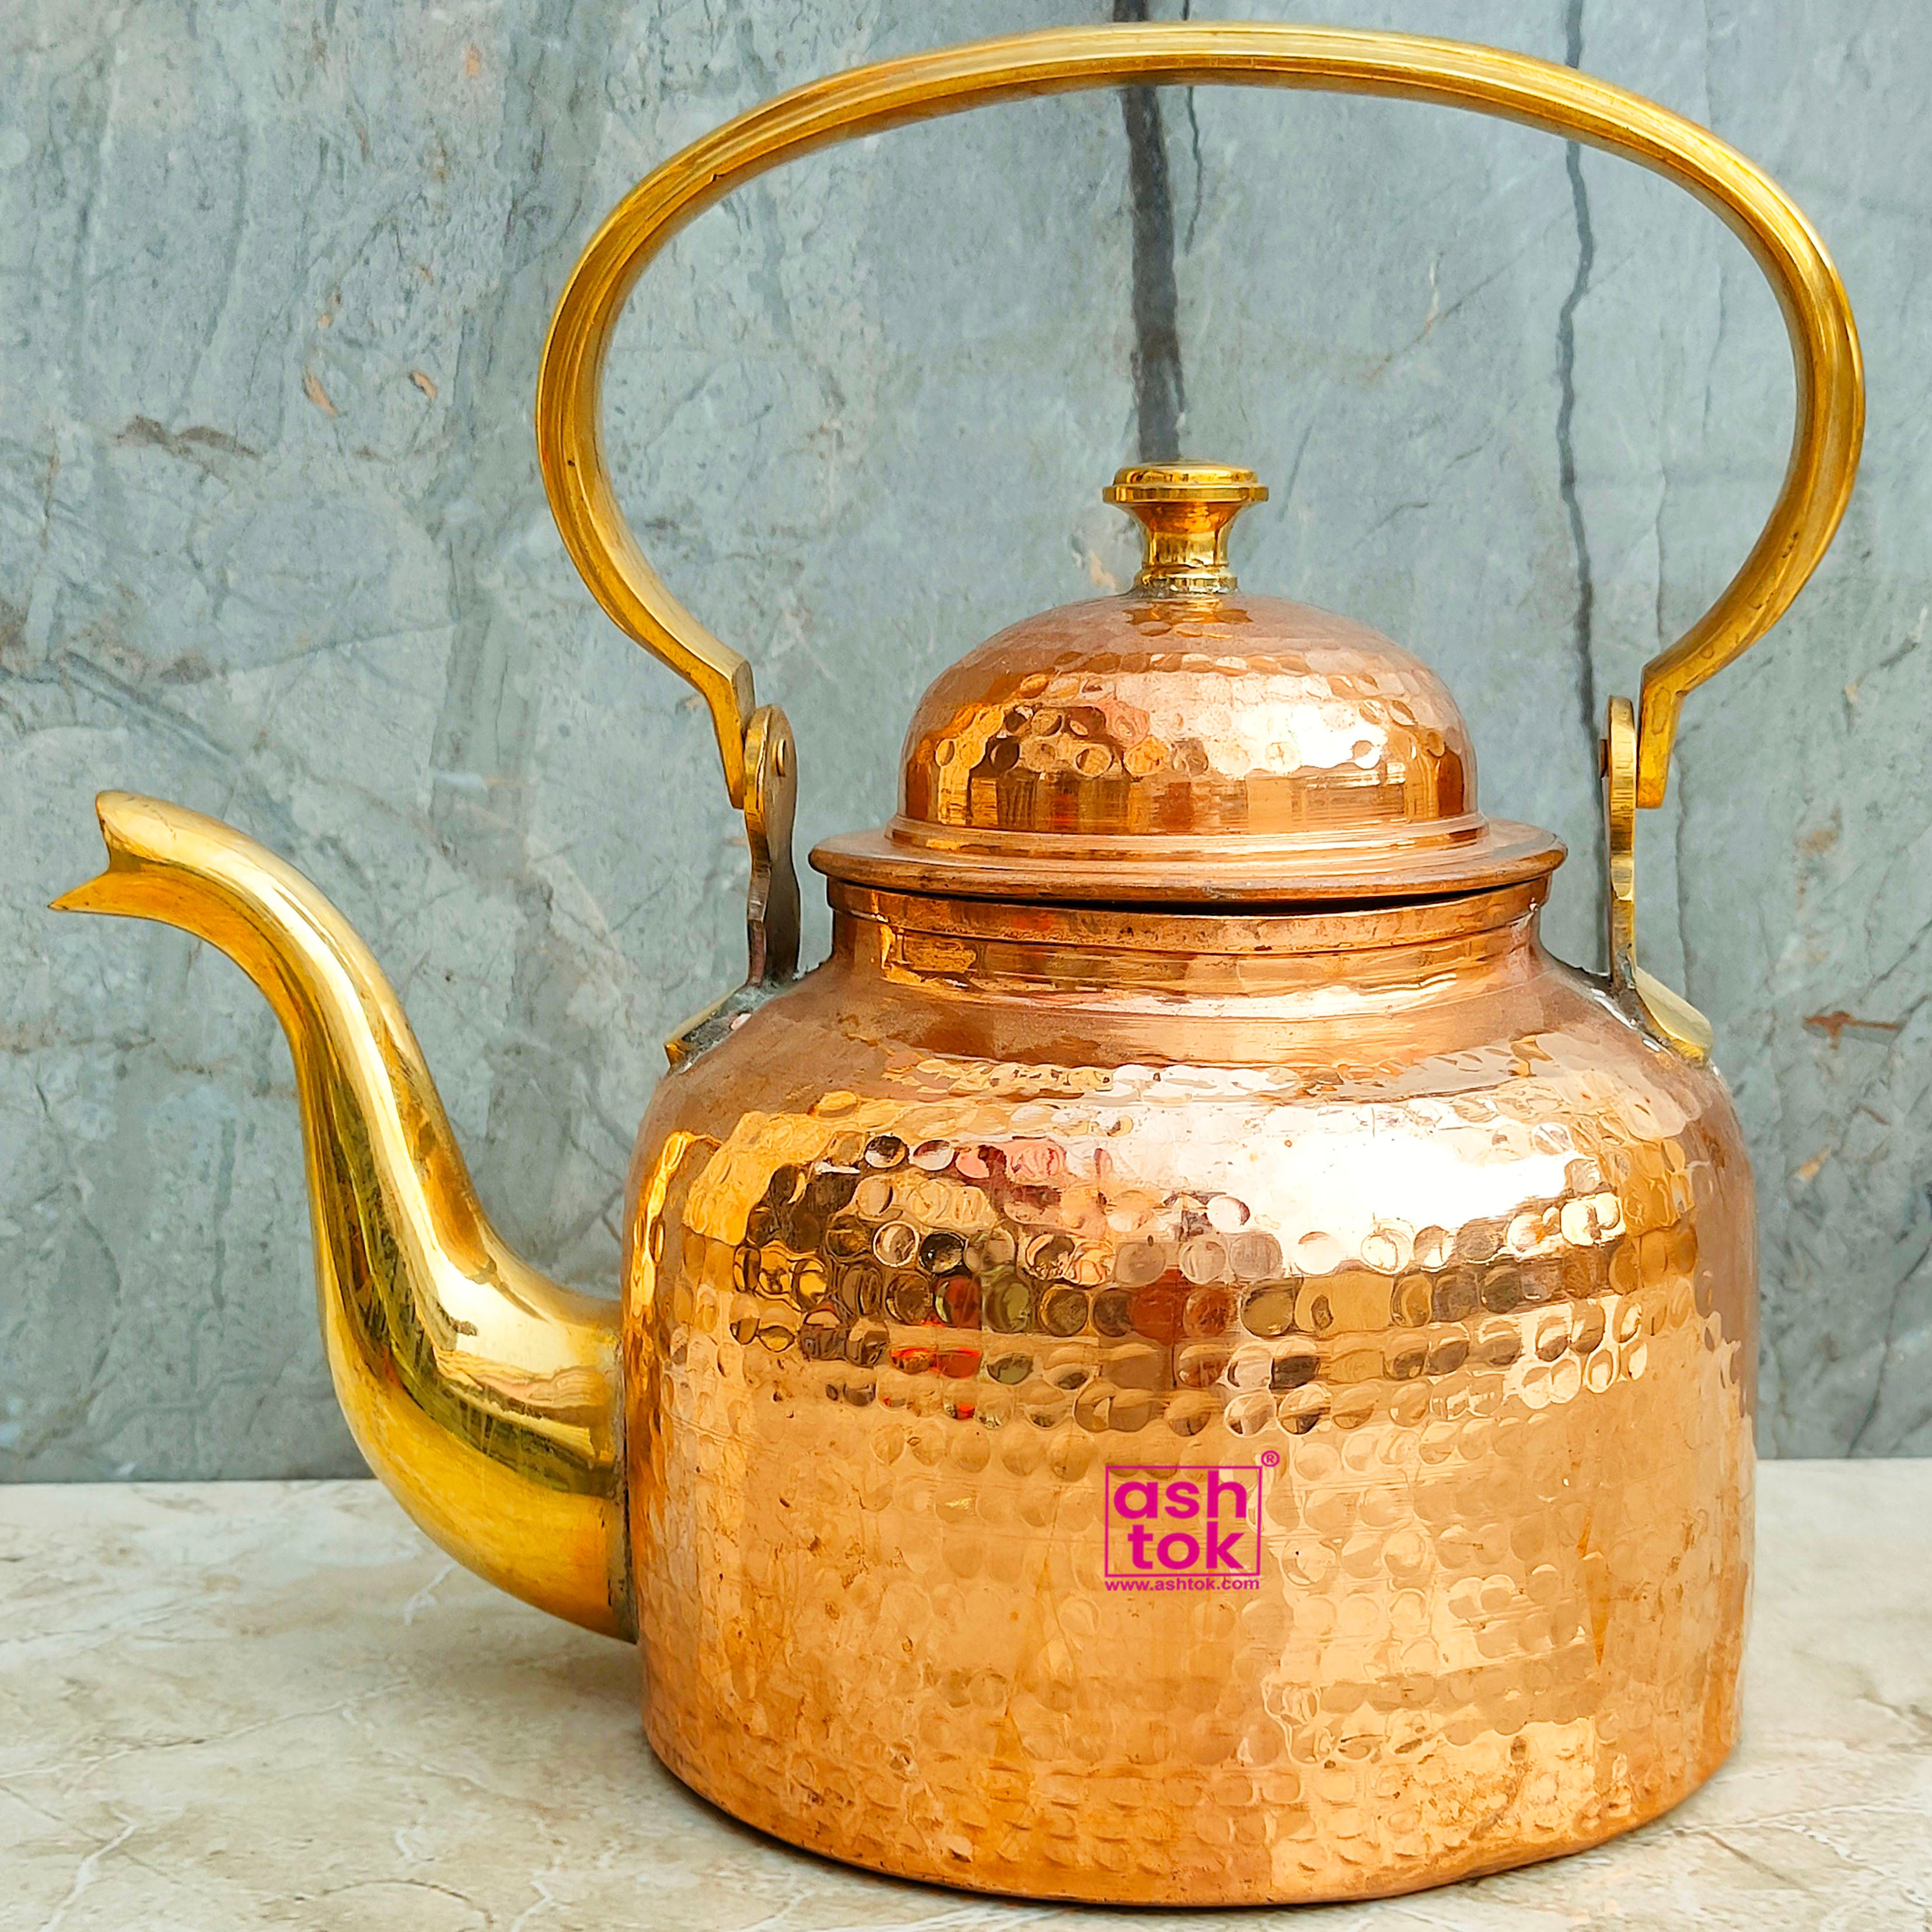 Brass Tea Kettle Pot, Brass Kettle Serving Pot, BraTea Pot